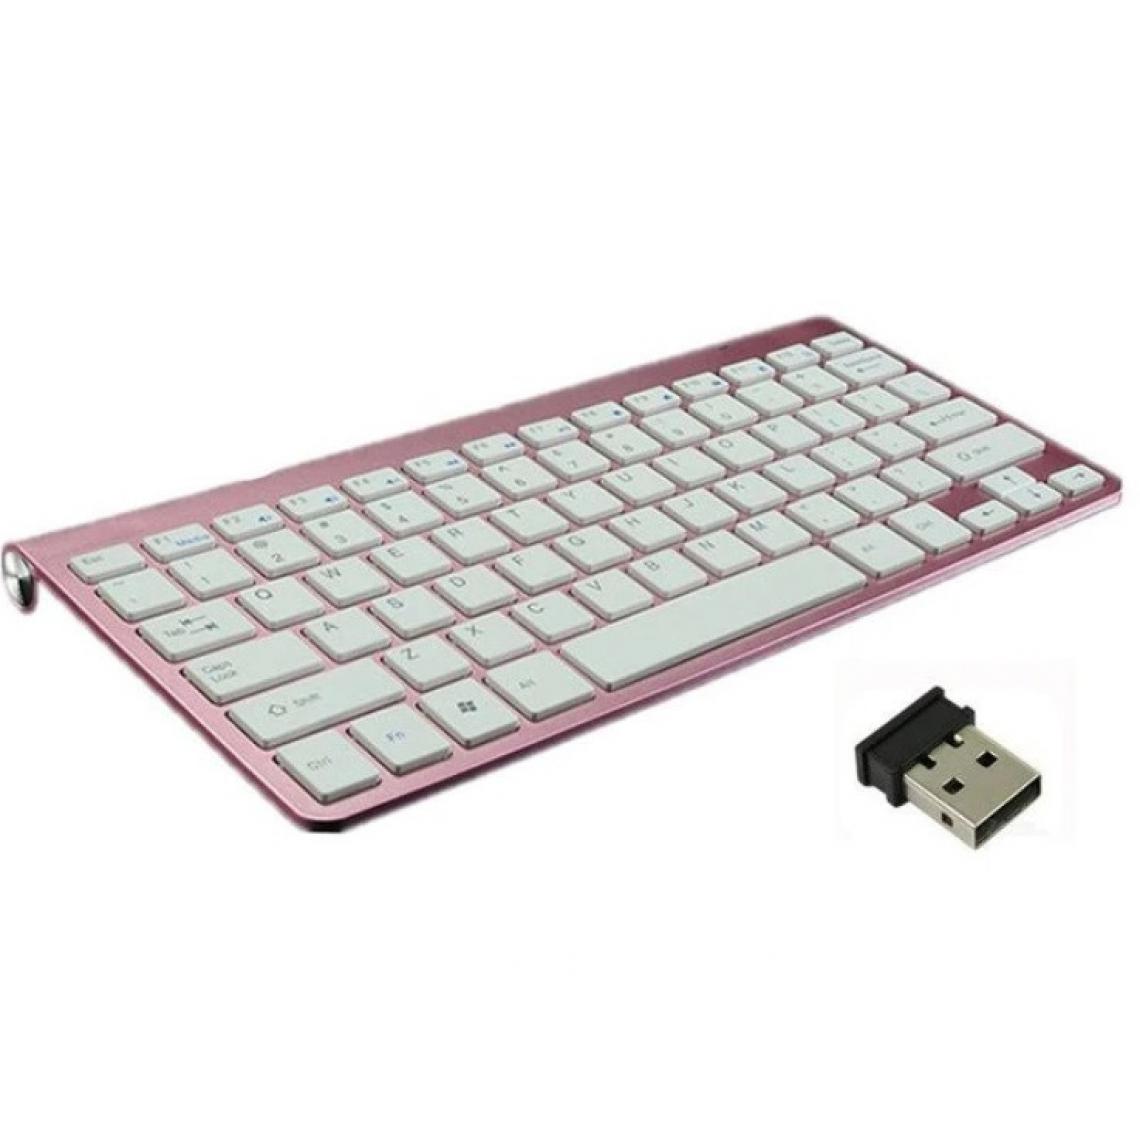 Shot - Clavier Sans Fil Metal pour MAC Mini APPLE USB QWERTY Piles (ROSE) - Clavier